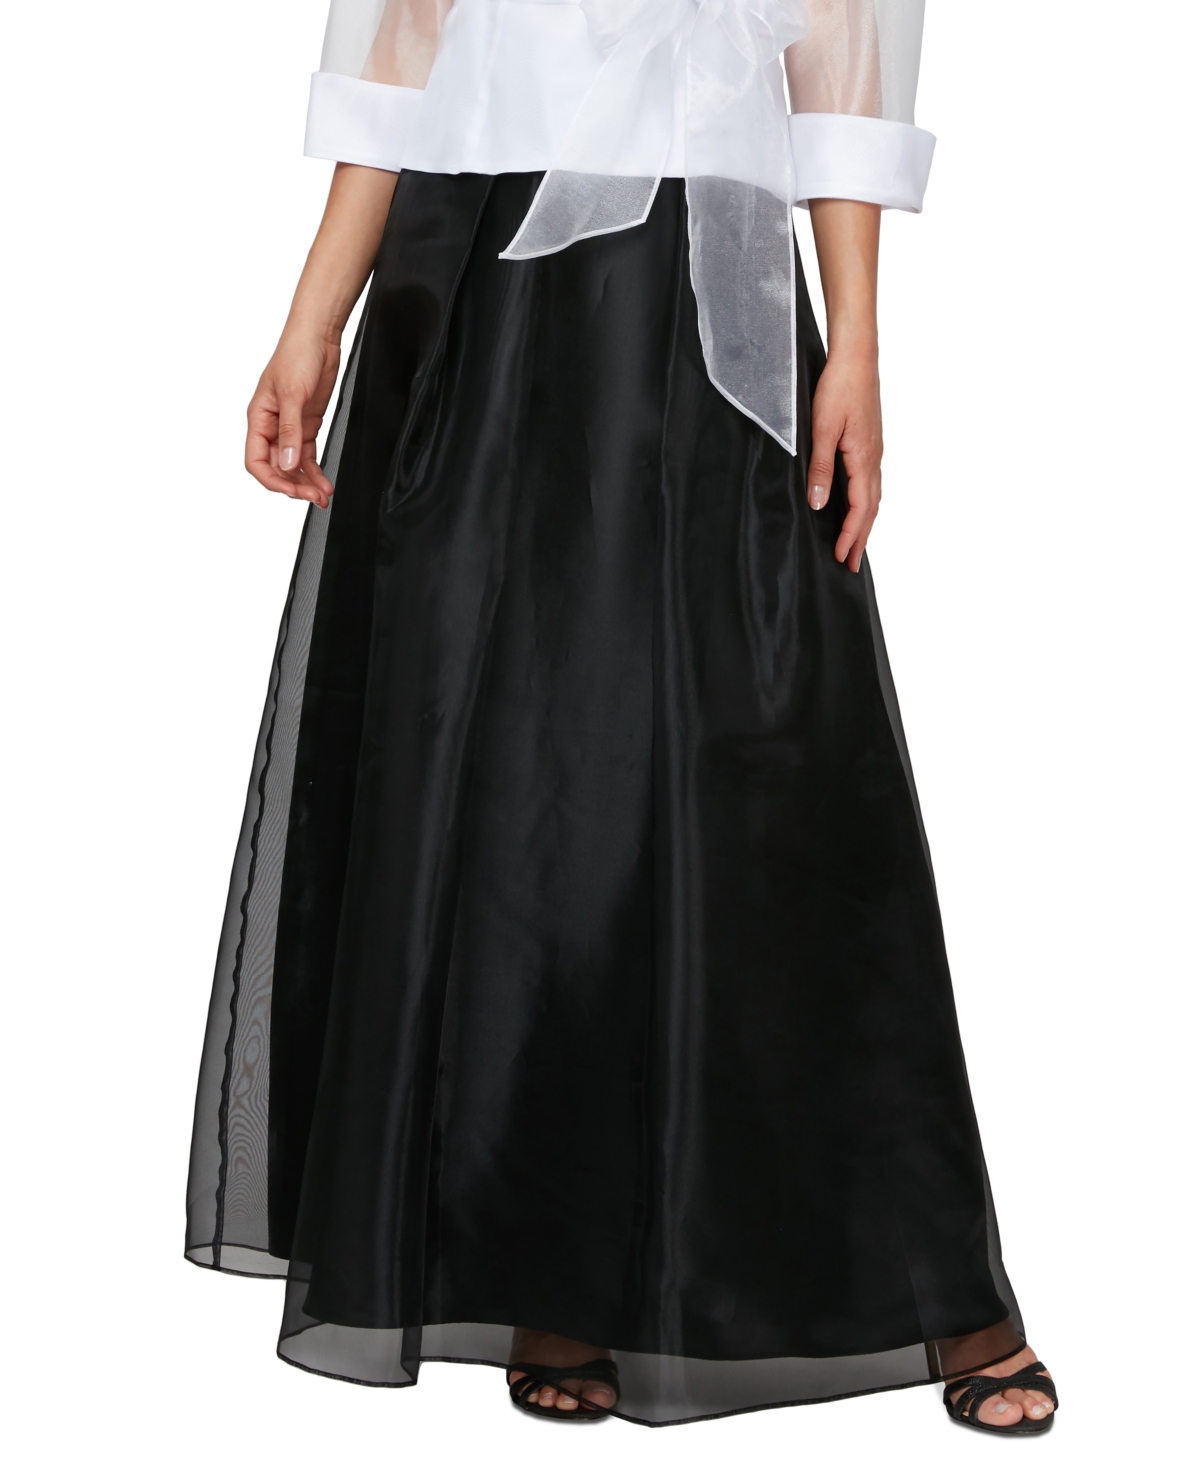 Women's Organza Maxi Ball Skirt - Black